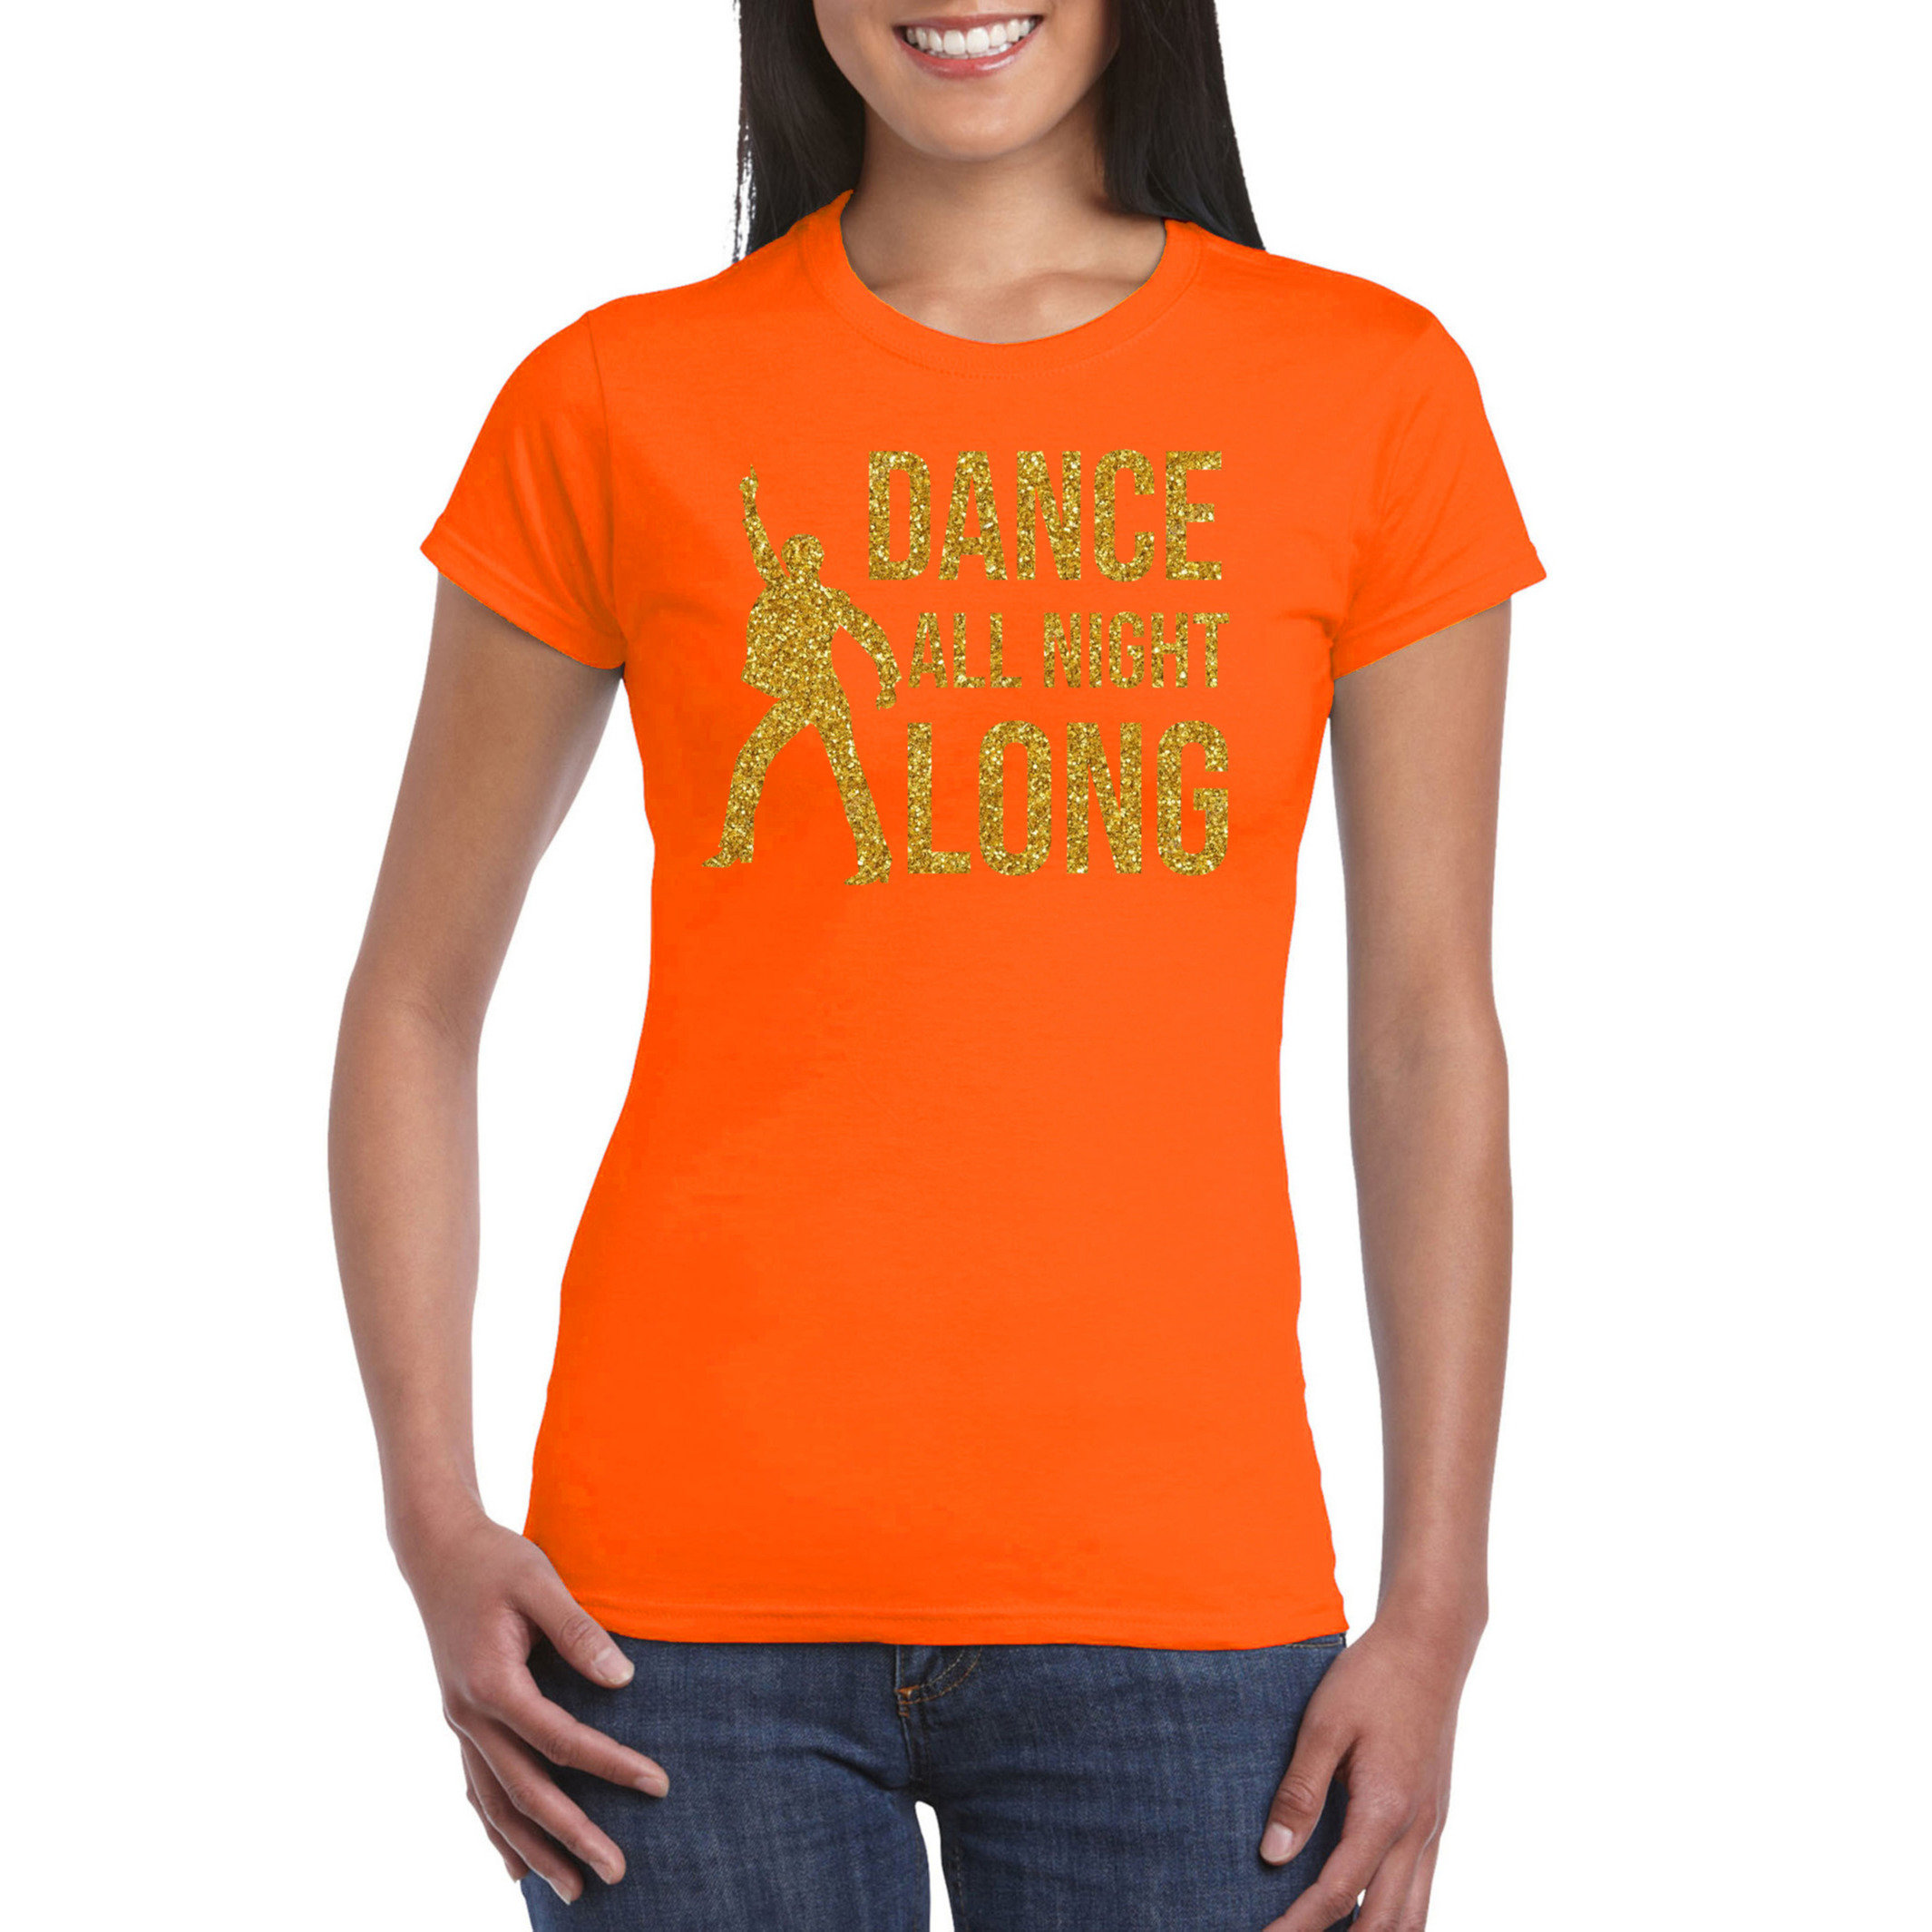 Dance all night long-70s-80s t-shirt oranje voor dames